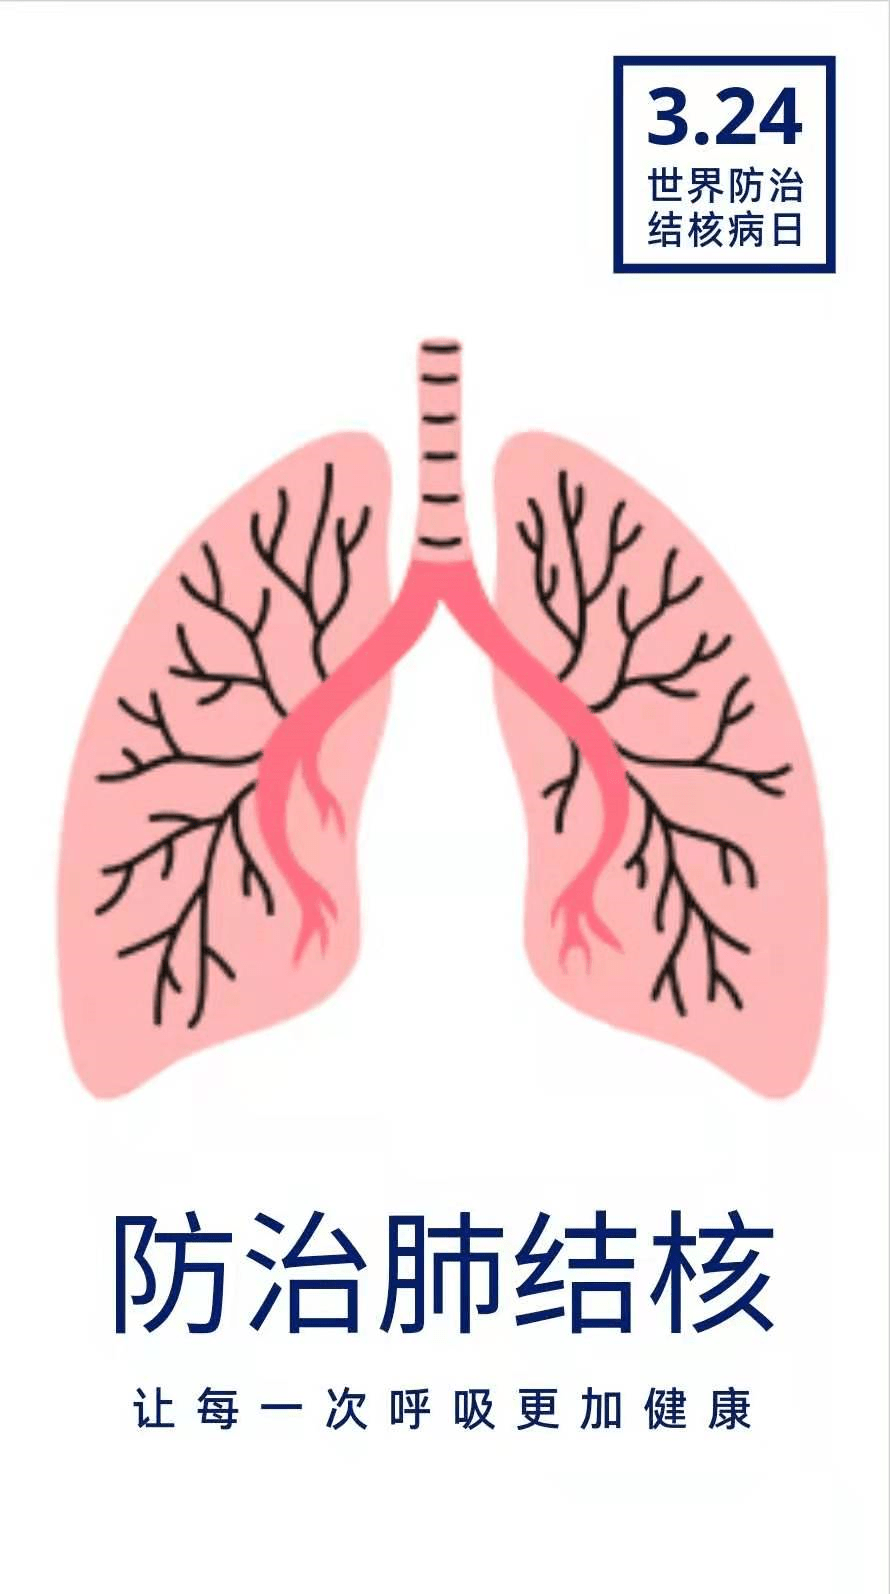 肺结核宣传画手绘图片